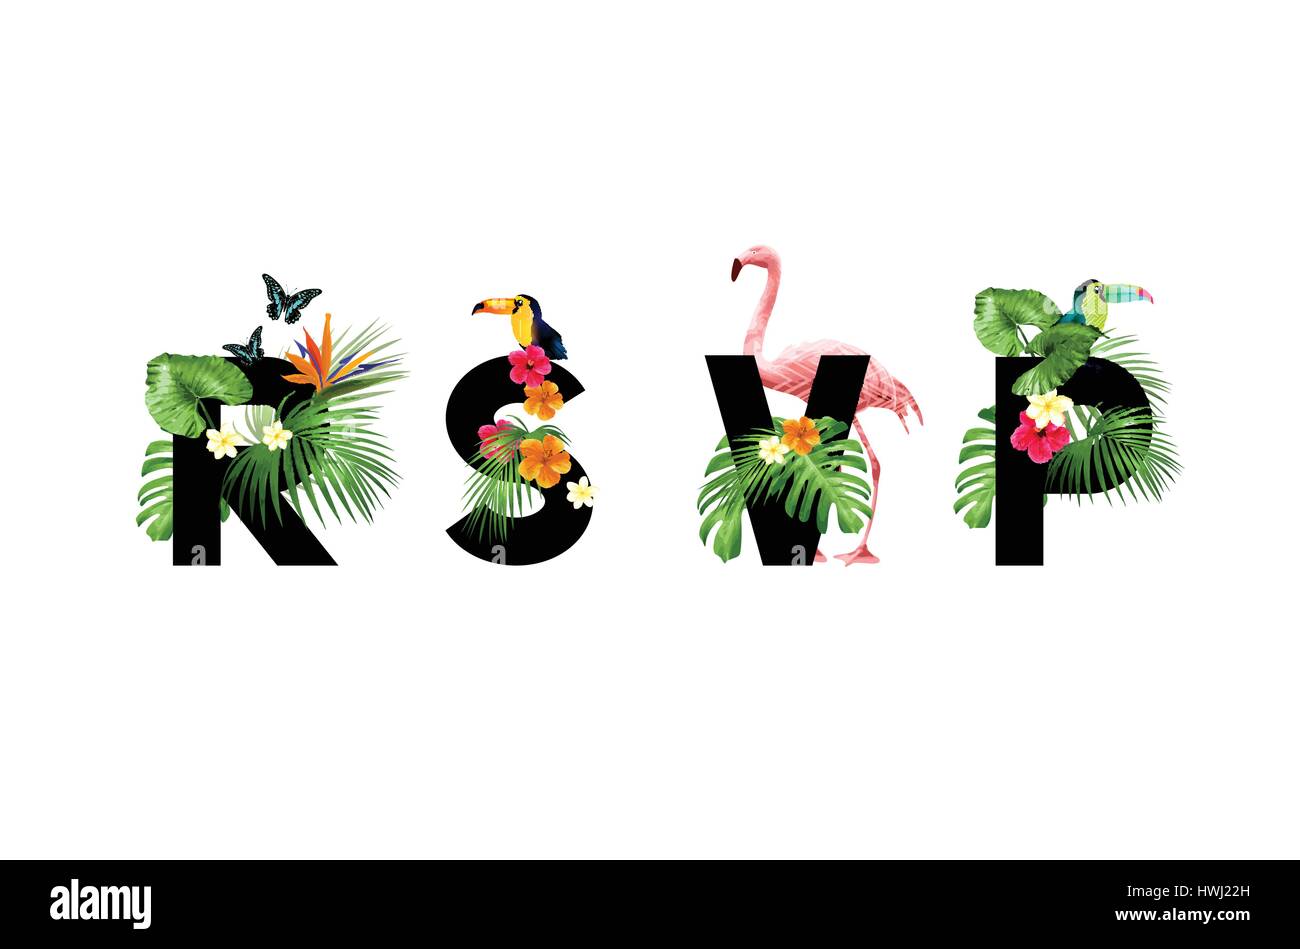 Mai-Einladungskarte mit tropischen Palmen und floralen Elementen. Vektor-Illustration. Stock Vektor